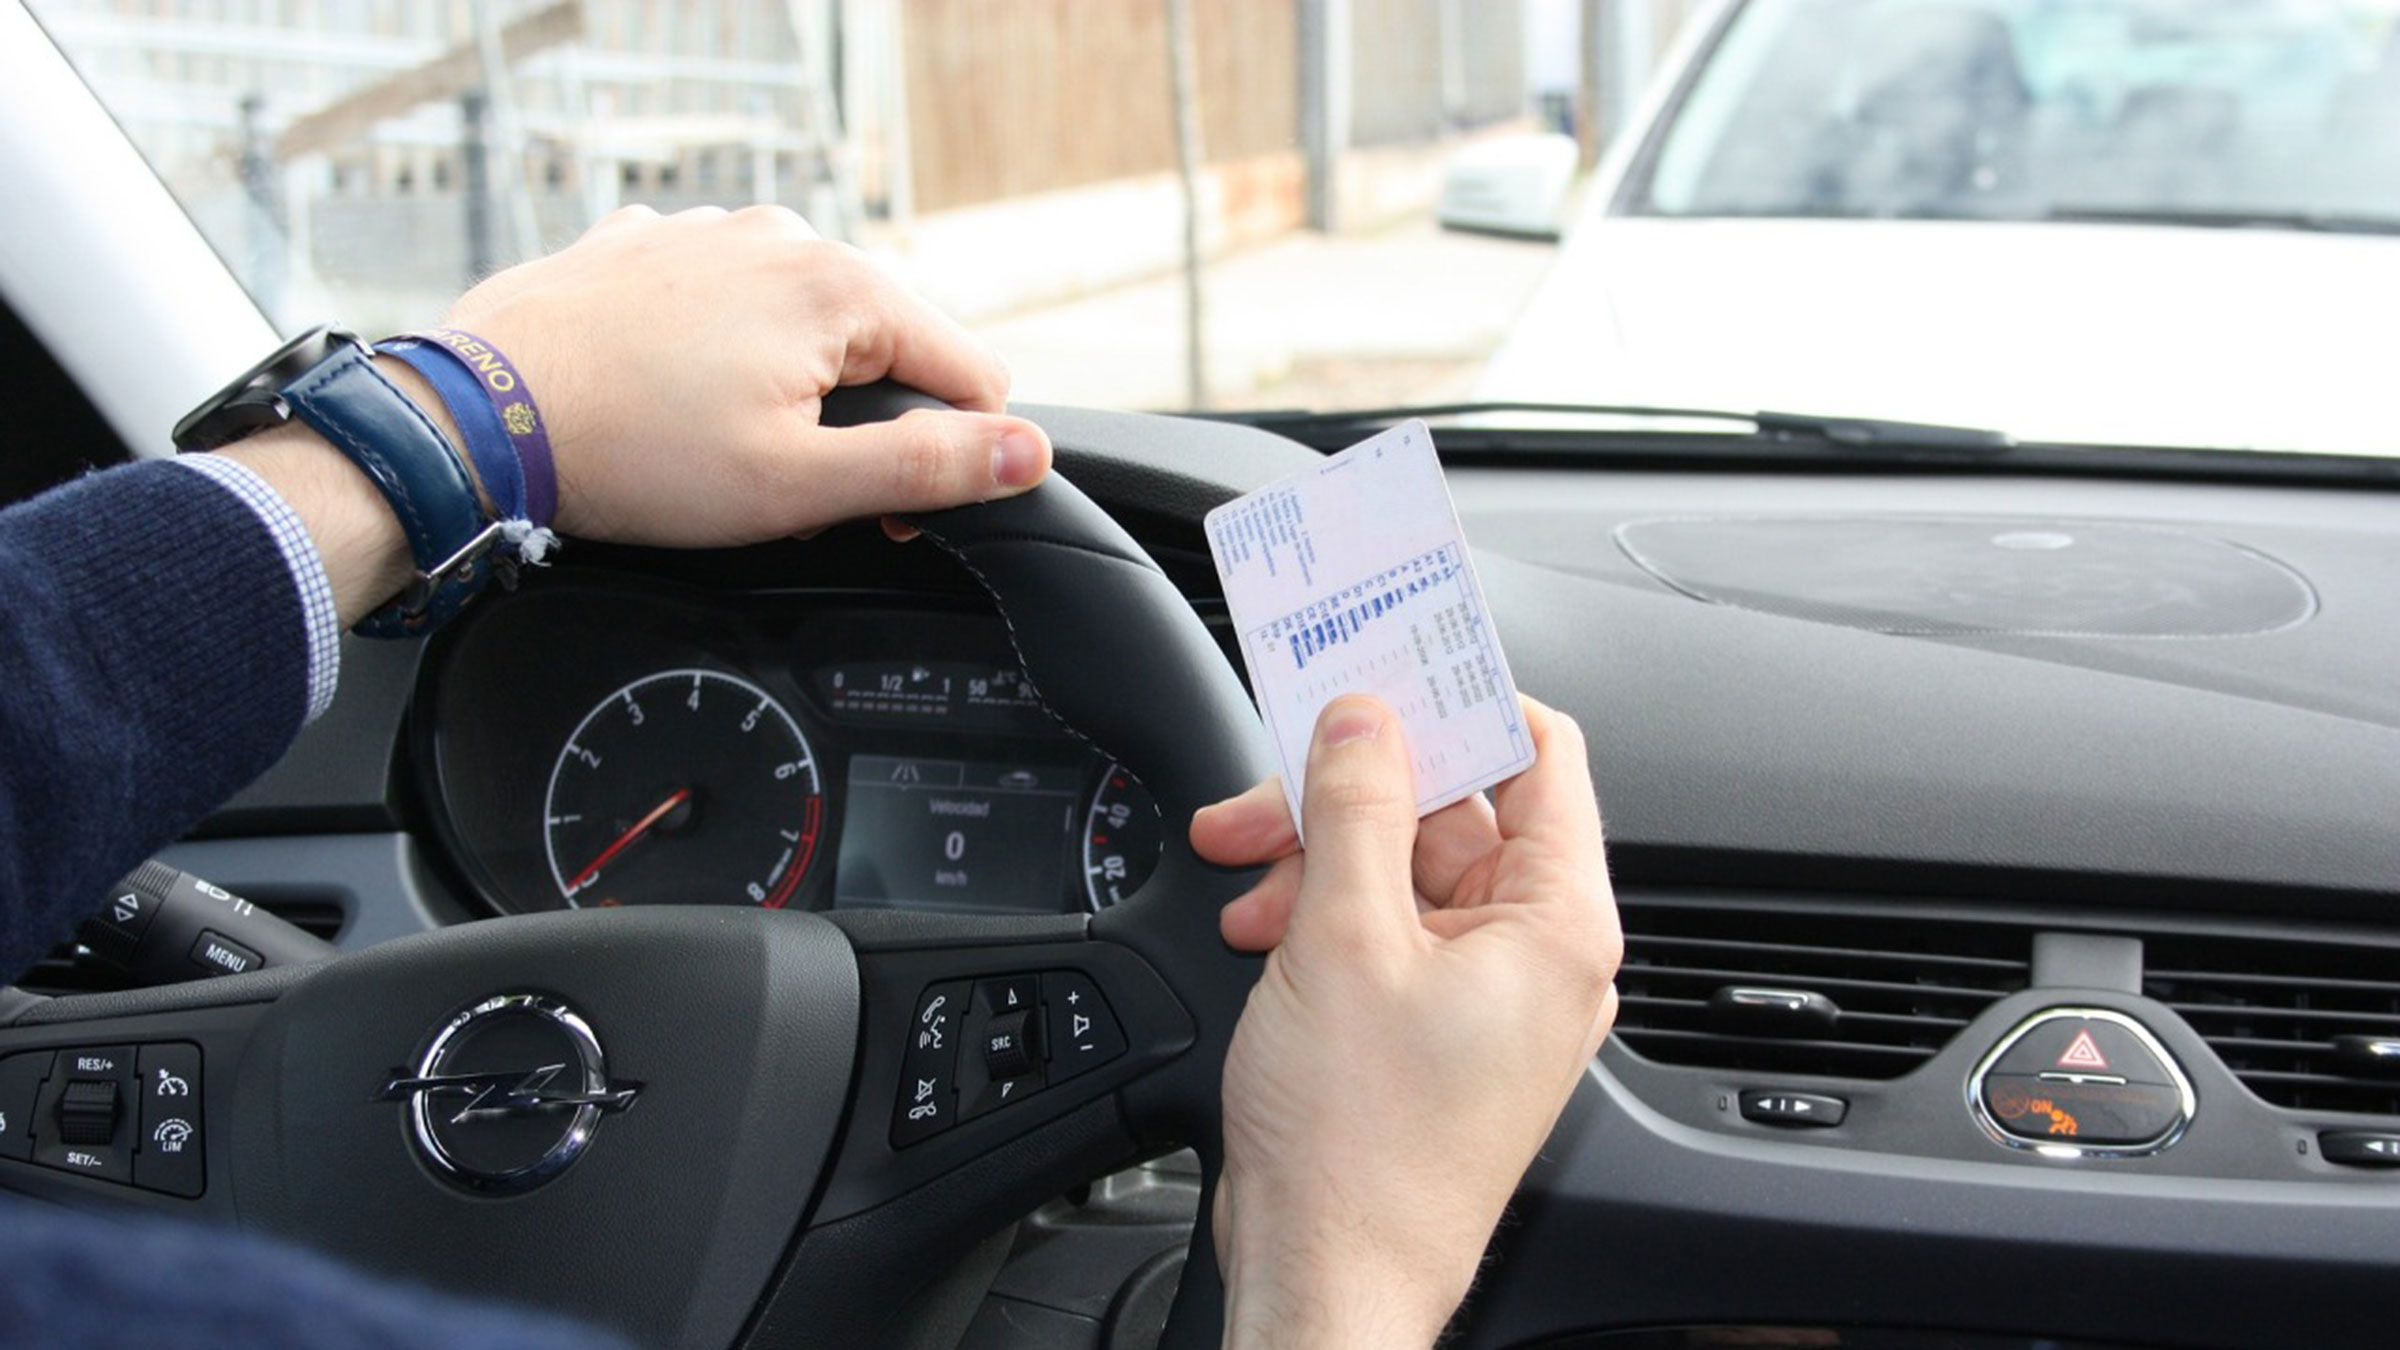 Carnet de conducir: cómo recuperar los puntos